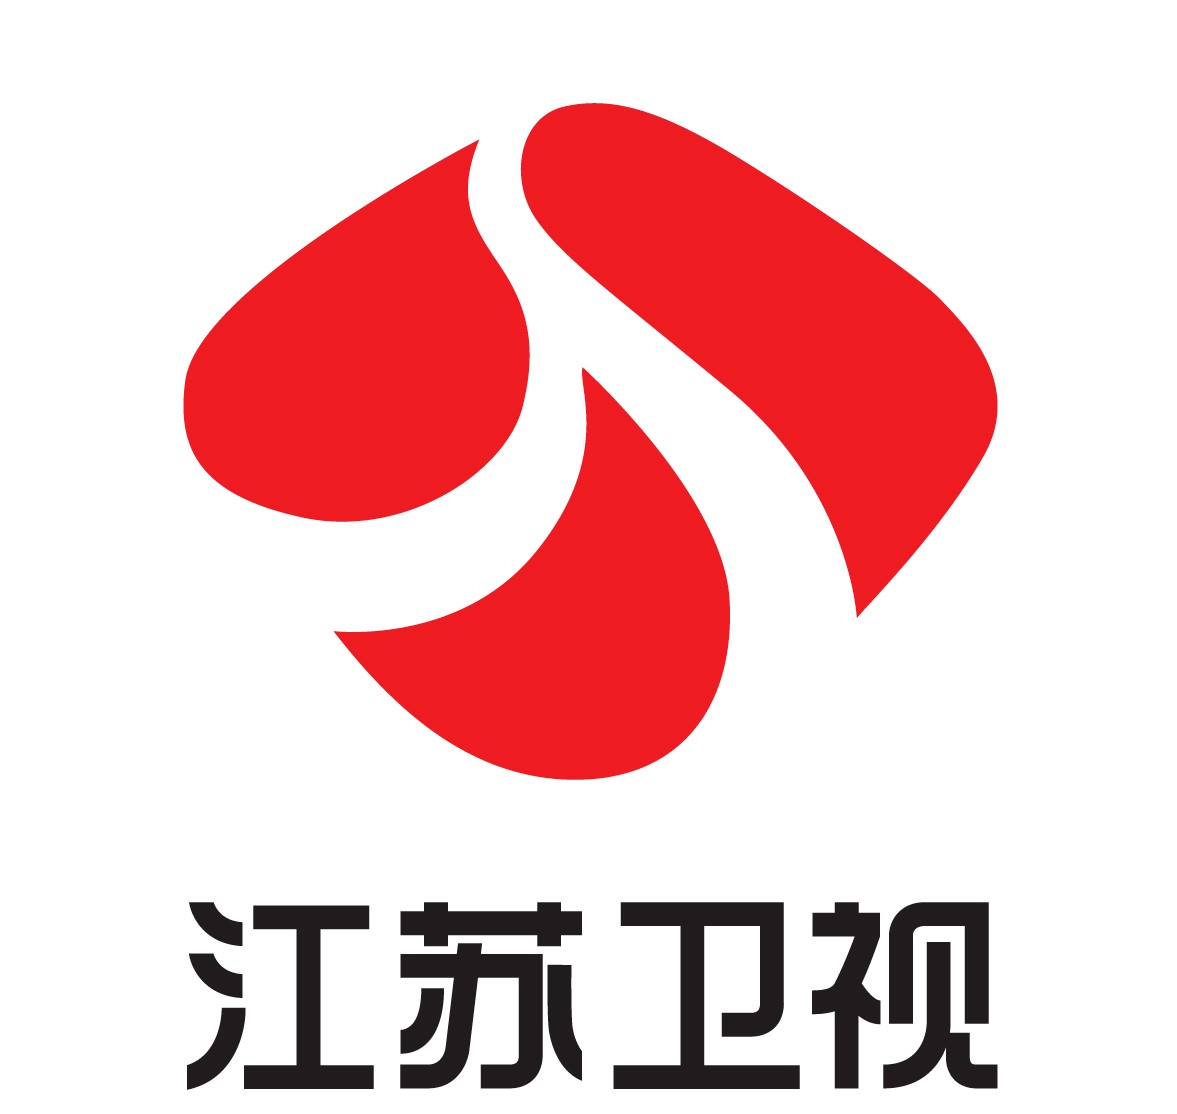 江苏广电logo图片